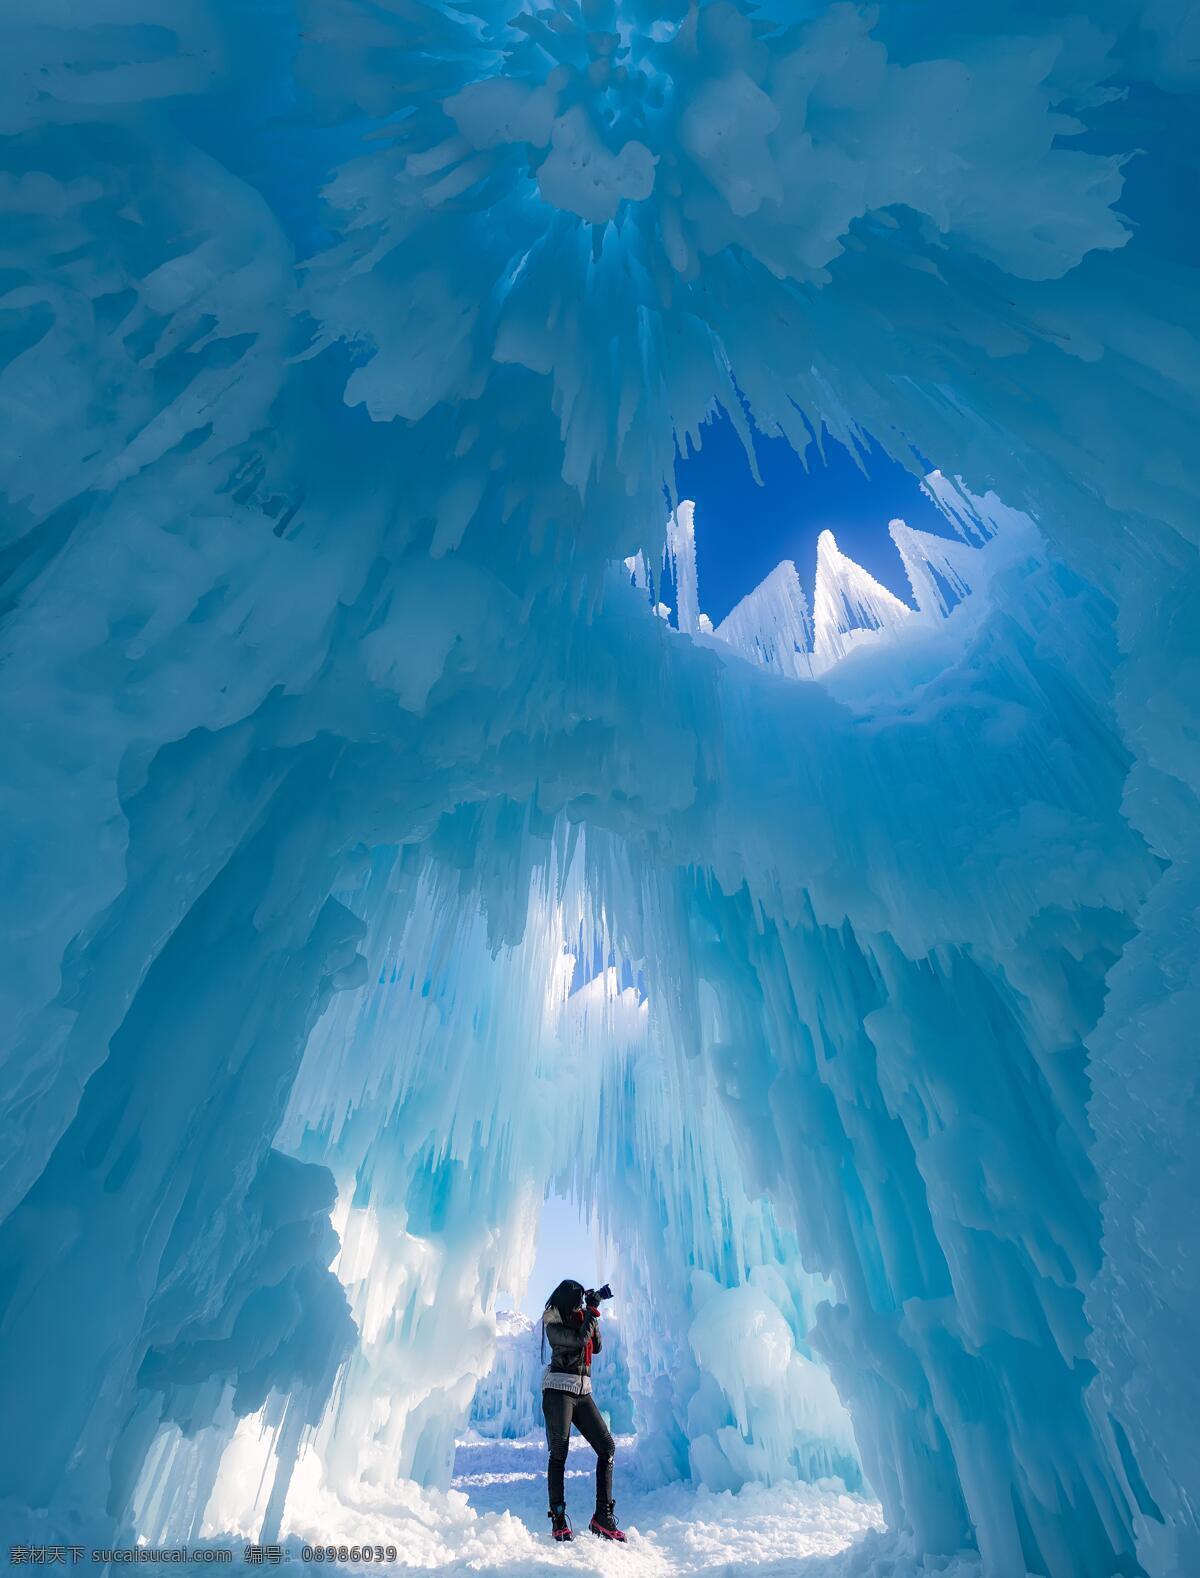 冰天雪地 冰块 冰雪 冰山 冰窖 冰川 雪地 雪花 南极 北极 北欧 北方 冰冻 结冰 冬季 冬天 寒冷 零下 自然风光 自然 风景 旅游 自然景观 自然风景